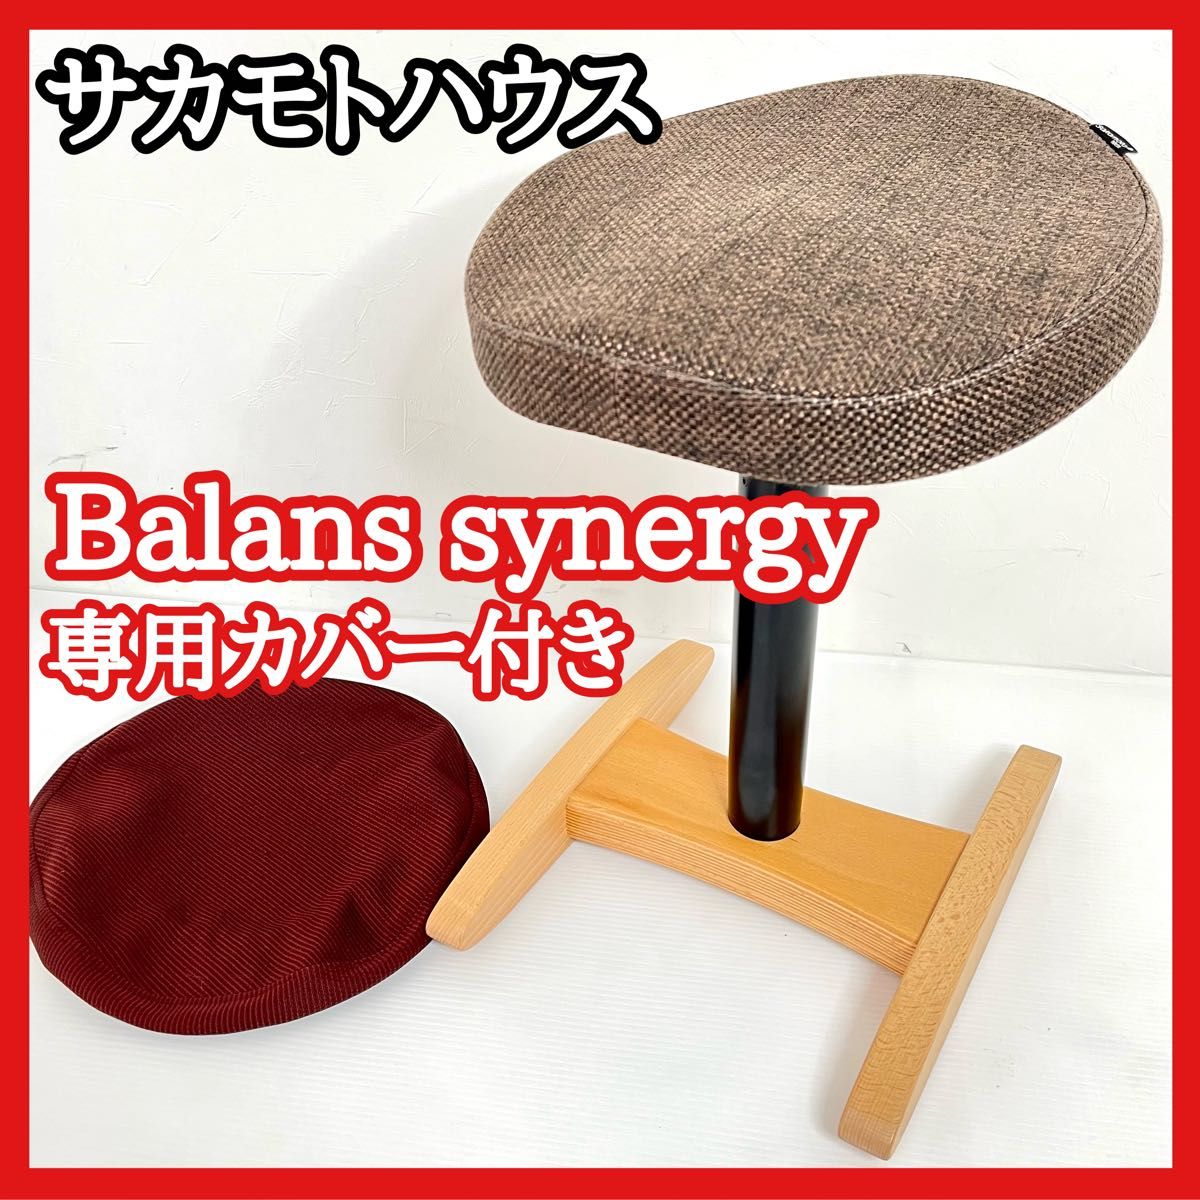 美品 Sakamoto house サカモトハウス Balans synergy バランスシナジー